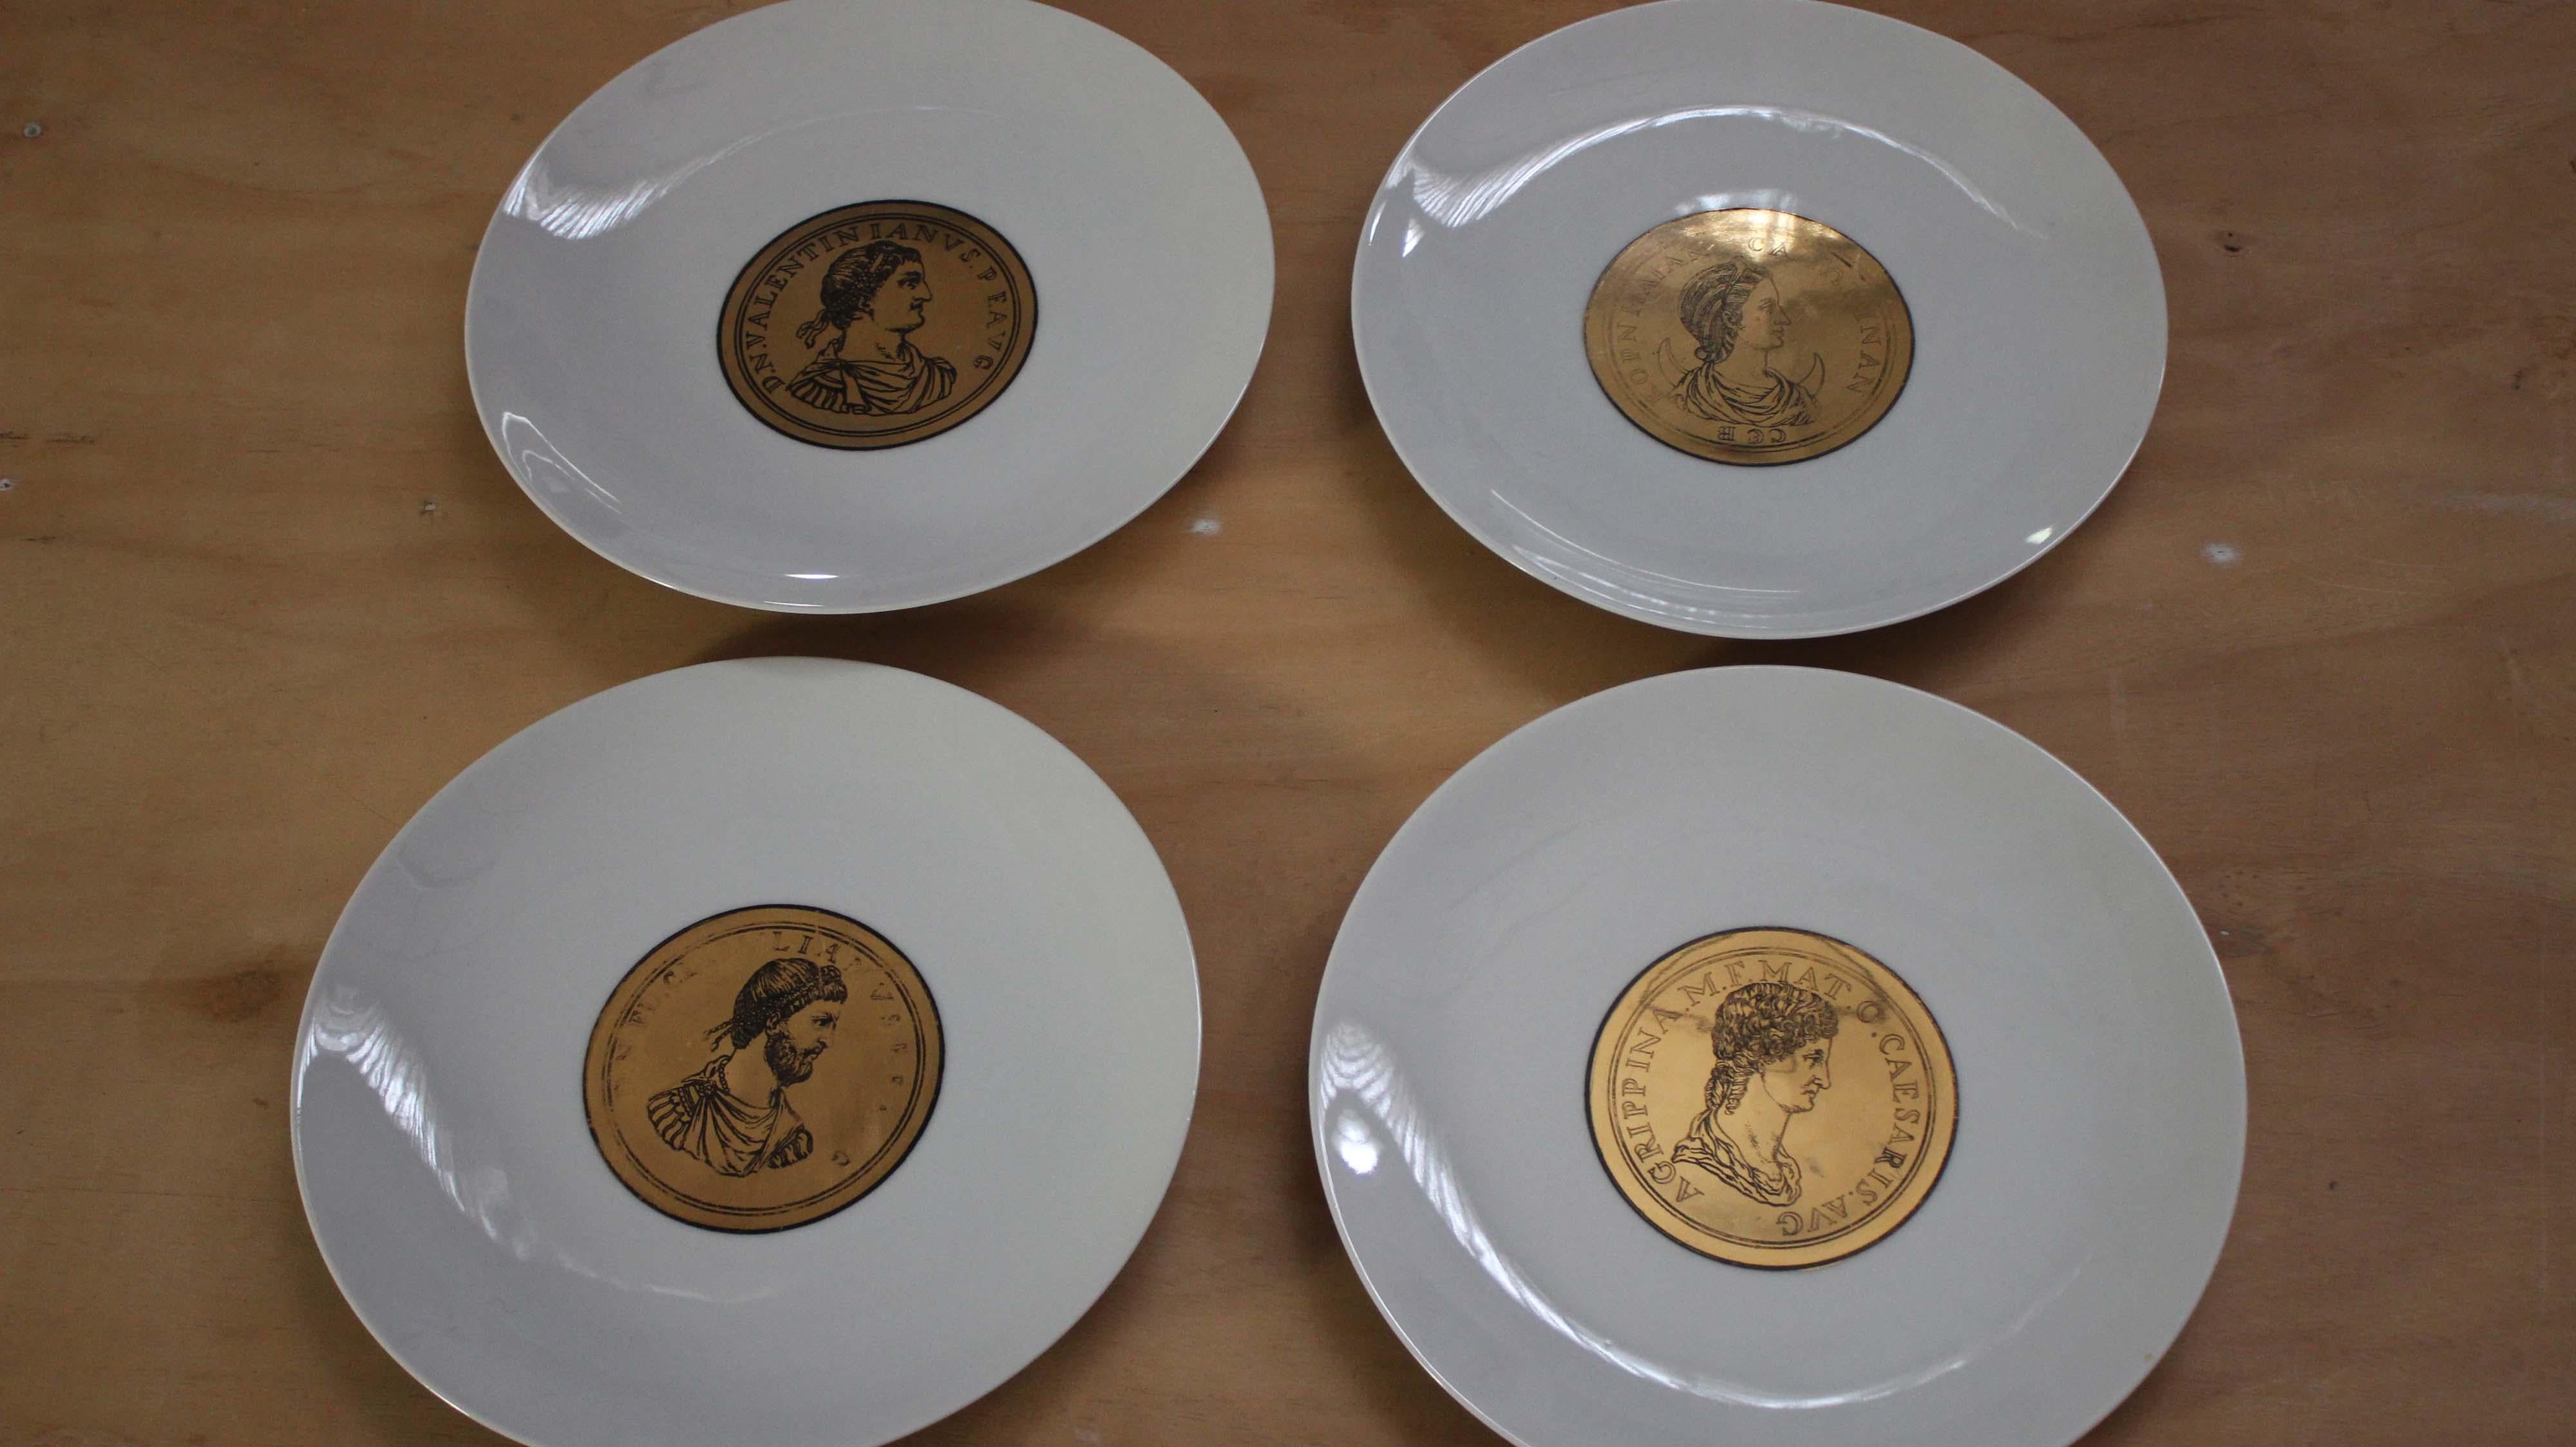 Atelier Fornasetti
Seltener Satz von 4 Tafeln mit Kaiserprofilen, gedruckt auf runden, vergoldeten Medaillen. Signiert von Atelier Fornasetti, hergestellt in Italien in den 1940er Jahren.
